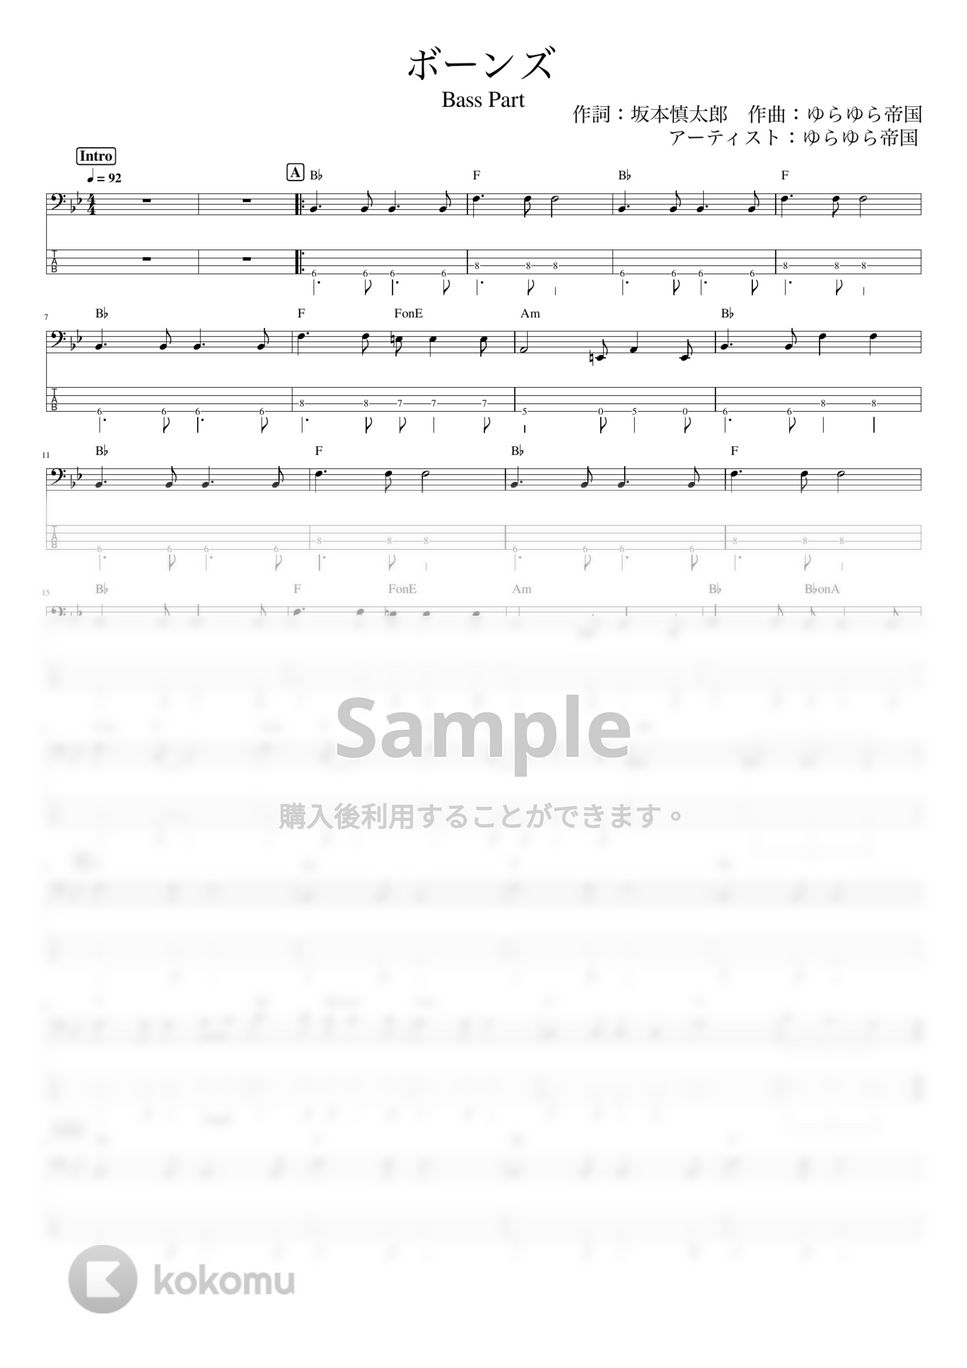 ゆらゆら帝国 - ボーンズ (ベースパート) by ホットレモンティーのレモン